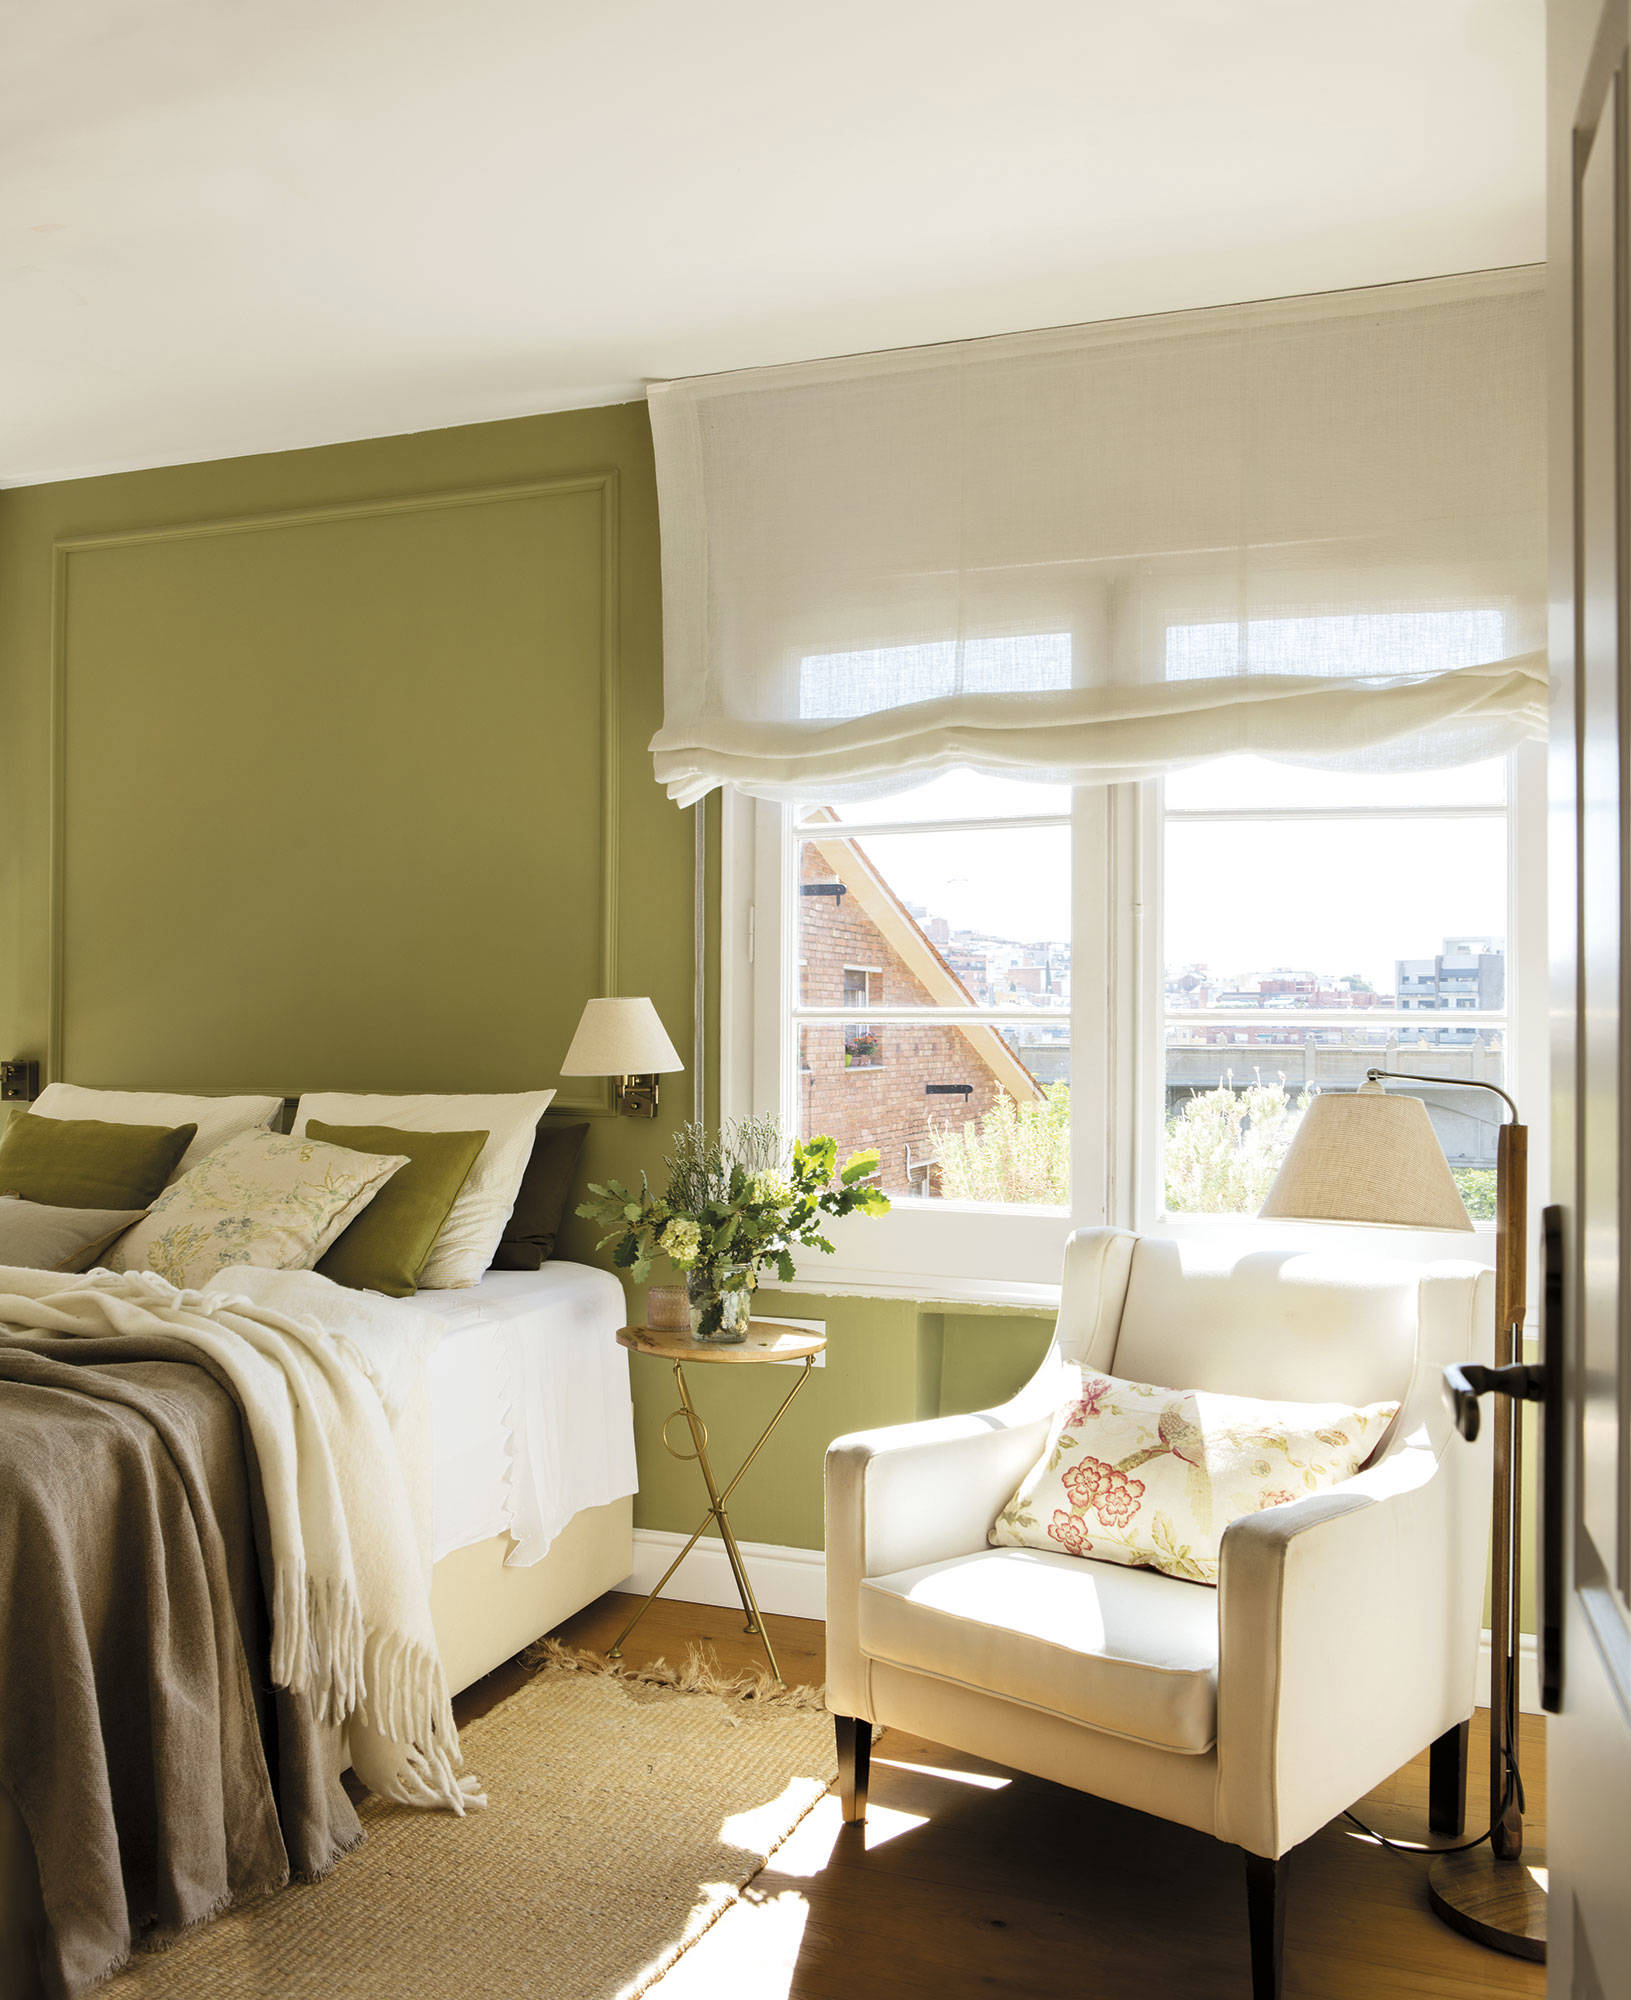 Dormitorio con cabecero verde y ropa de cama a juego. Cerca del armario, una butaca blanca.